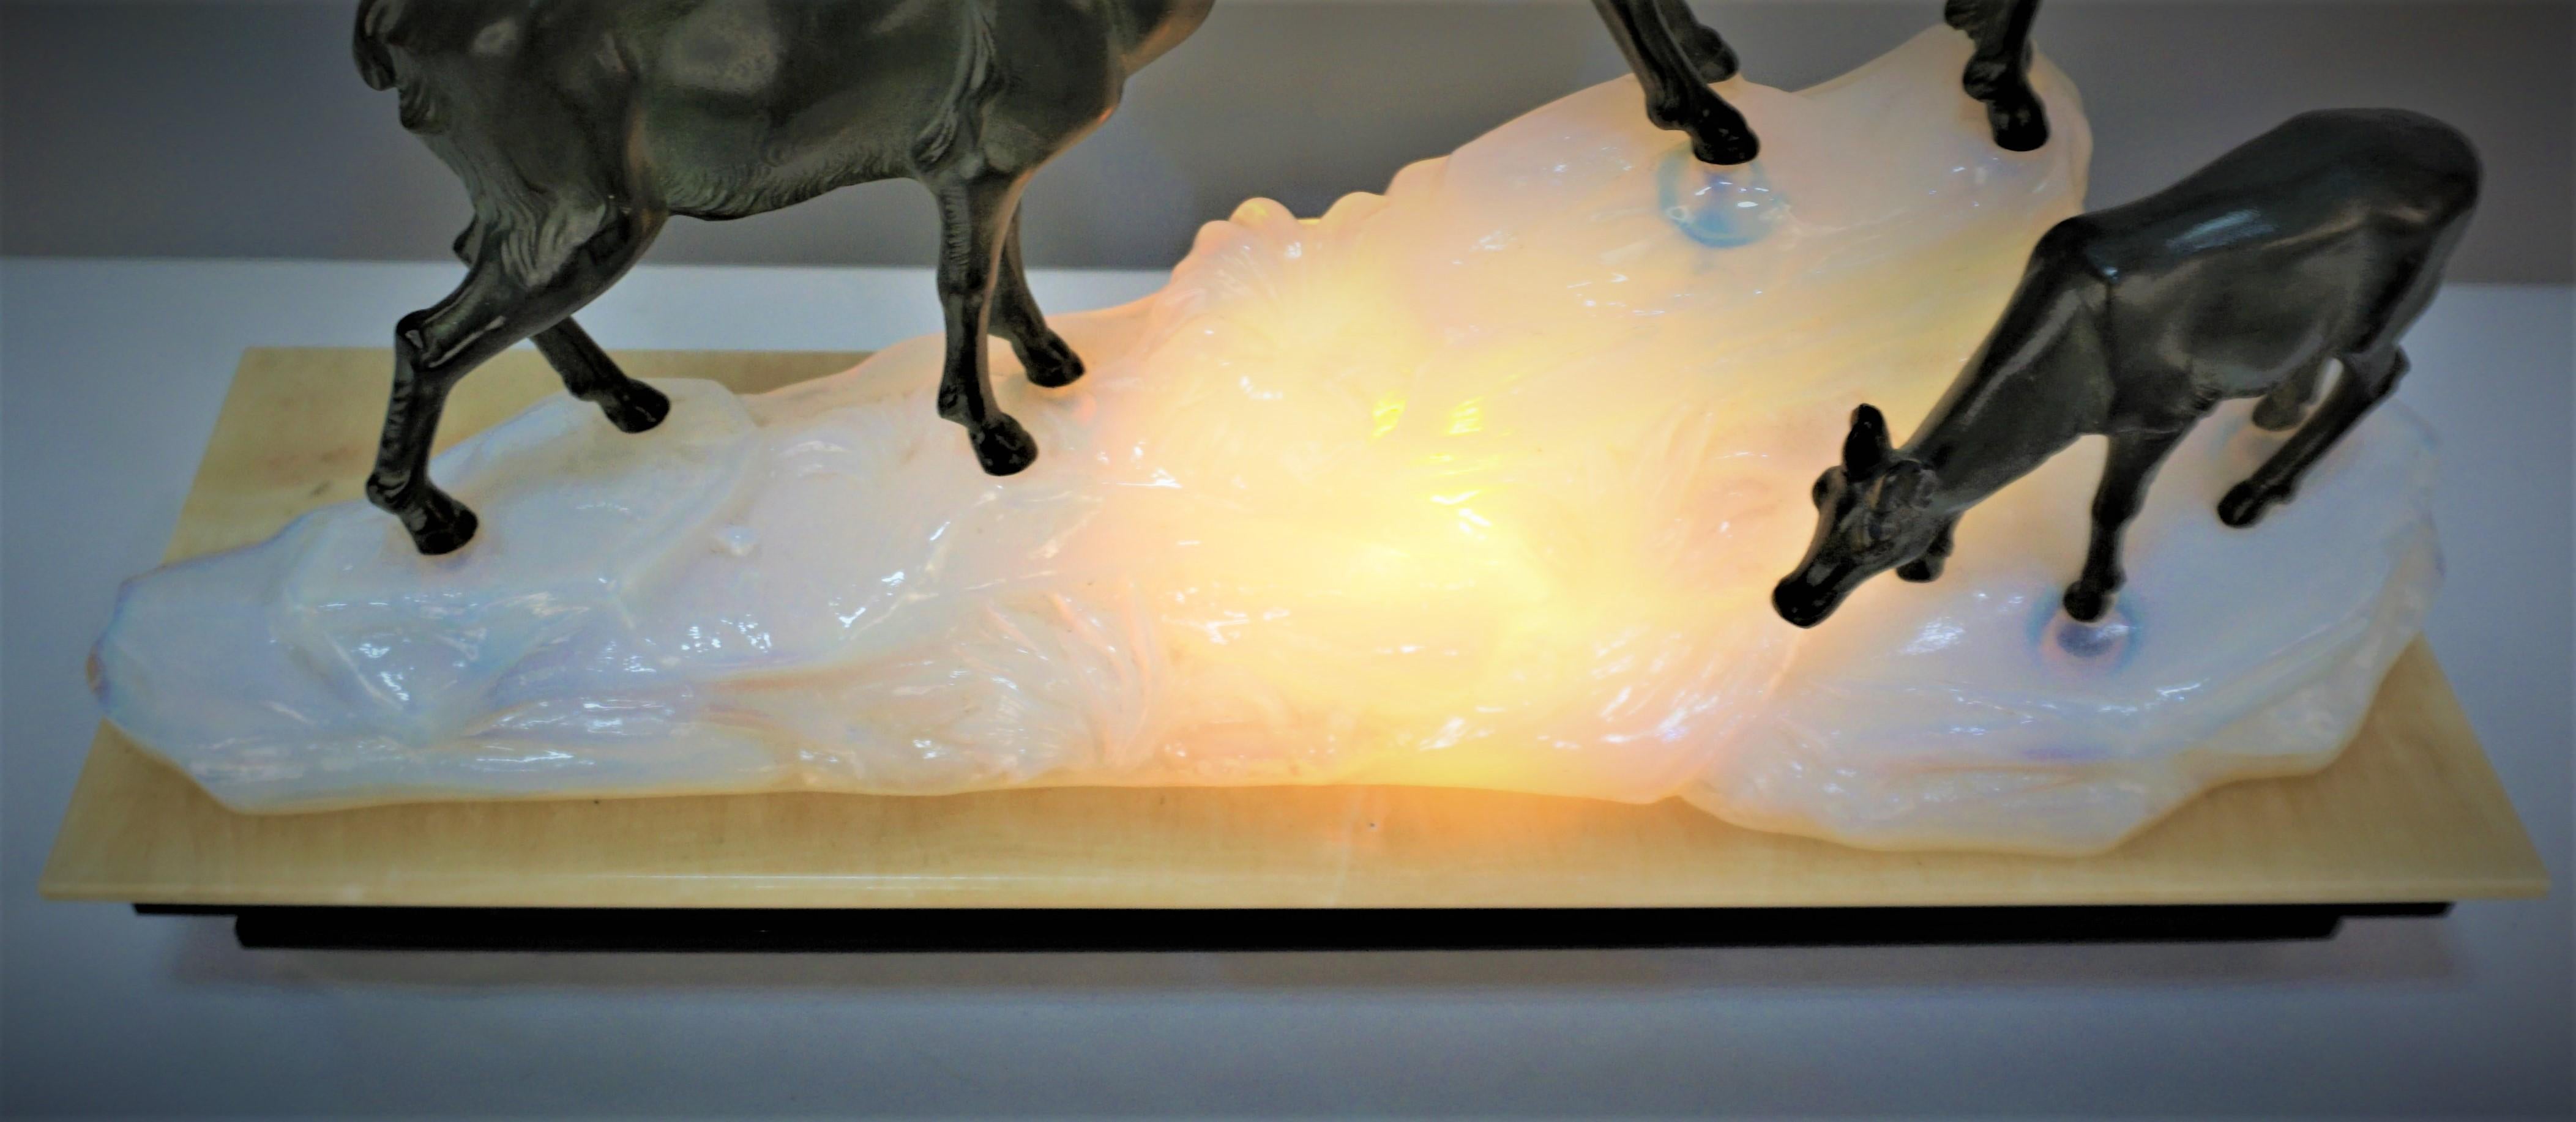 Magnifique lampe sculpture Art Déco:: onyx beige assis sur du marbre noir comme base:: montagne rocheuse en verre opalin bleu doré avec lumière à l'intérieur et antilopes debout au sommet du rocher (les sculptures en métal pourraient avoir été